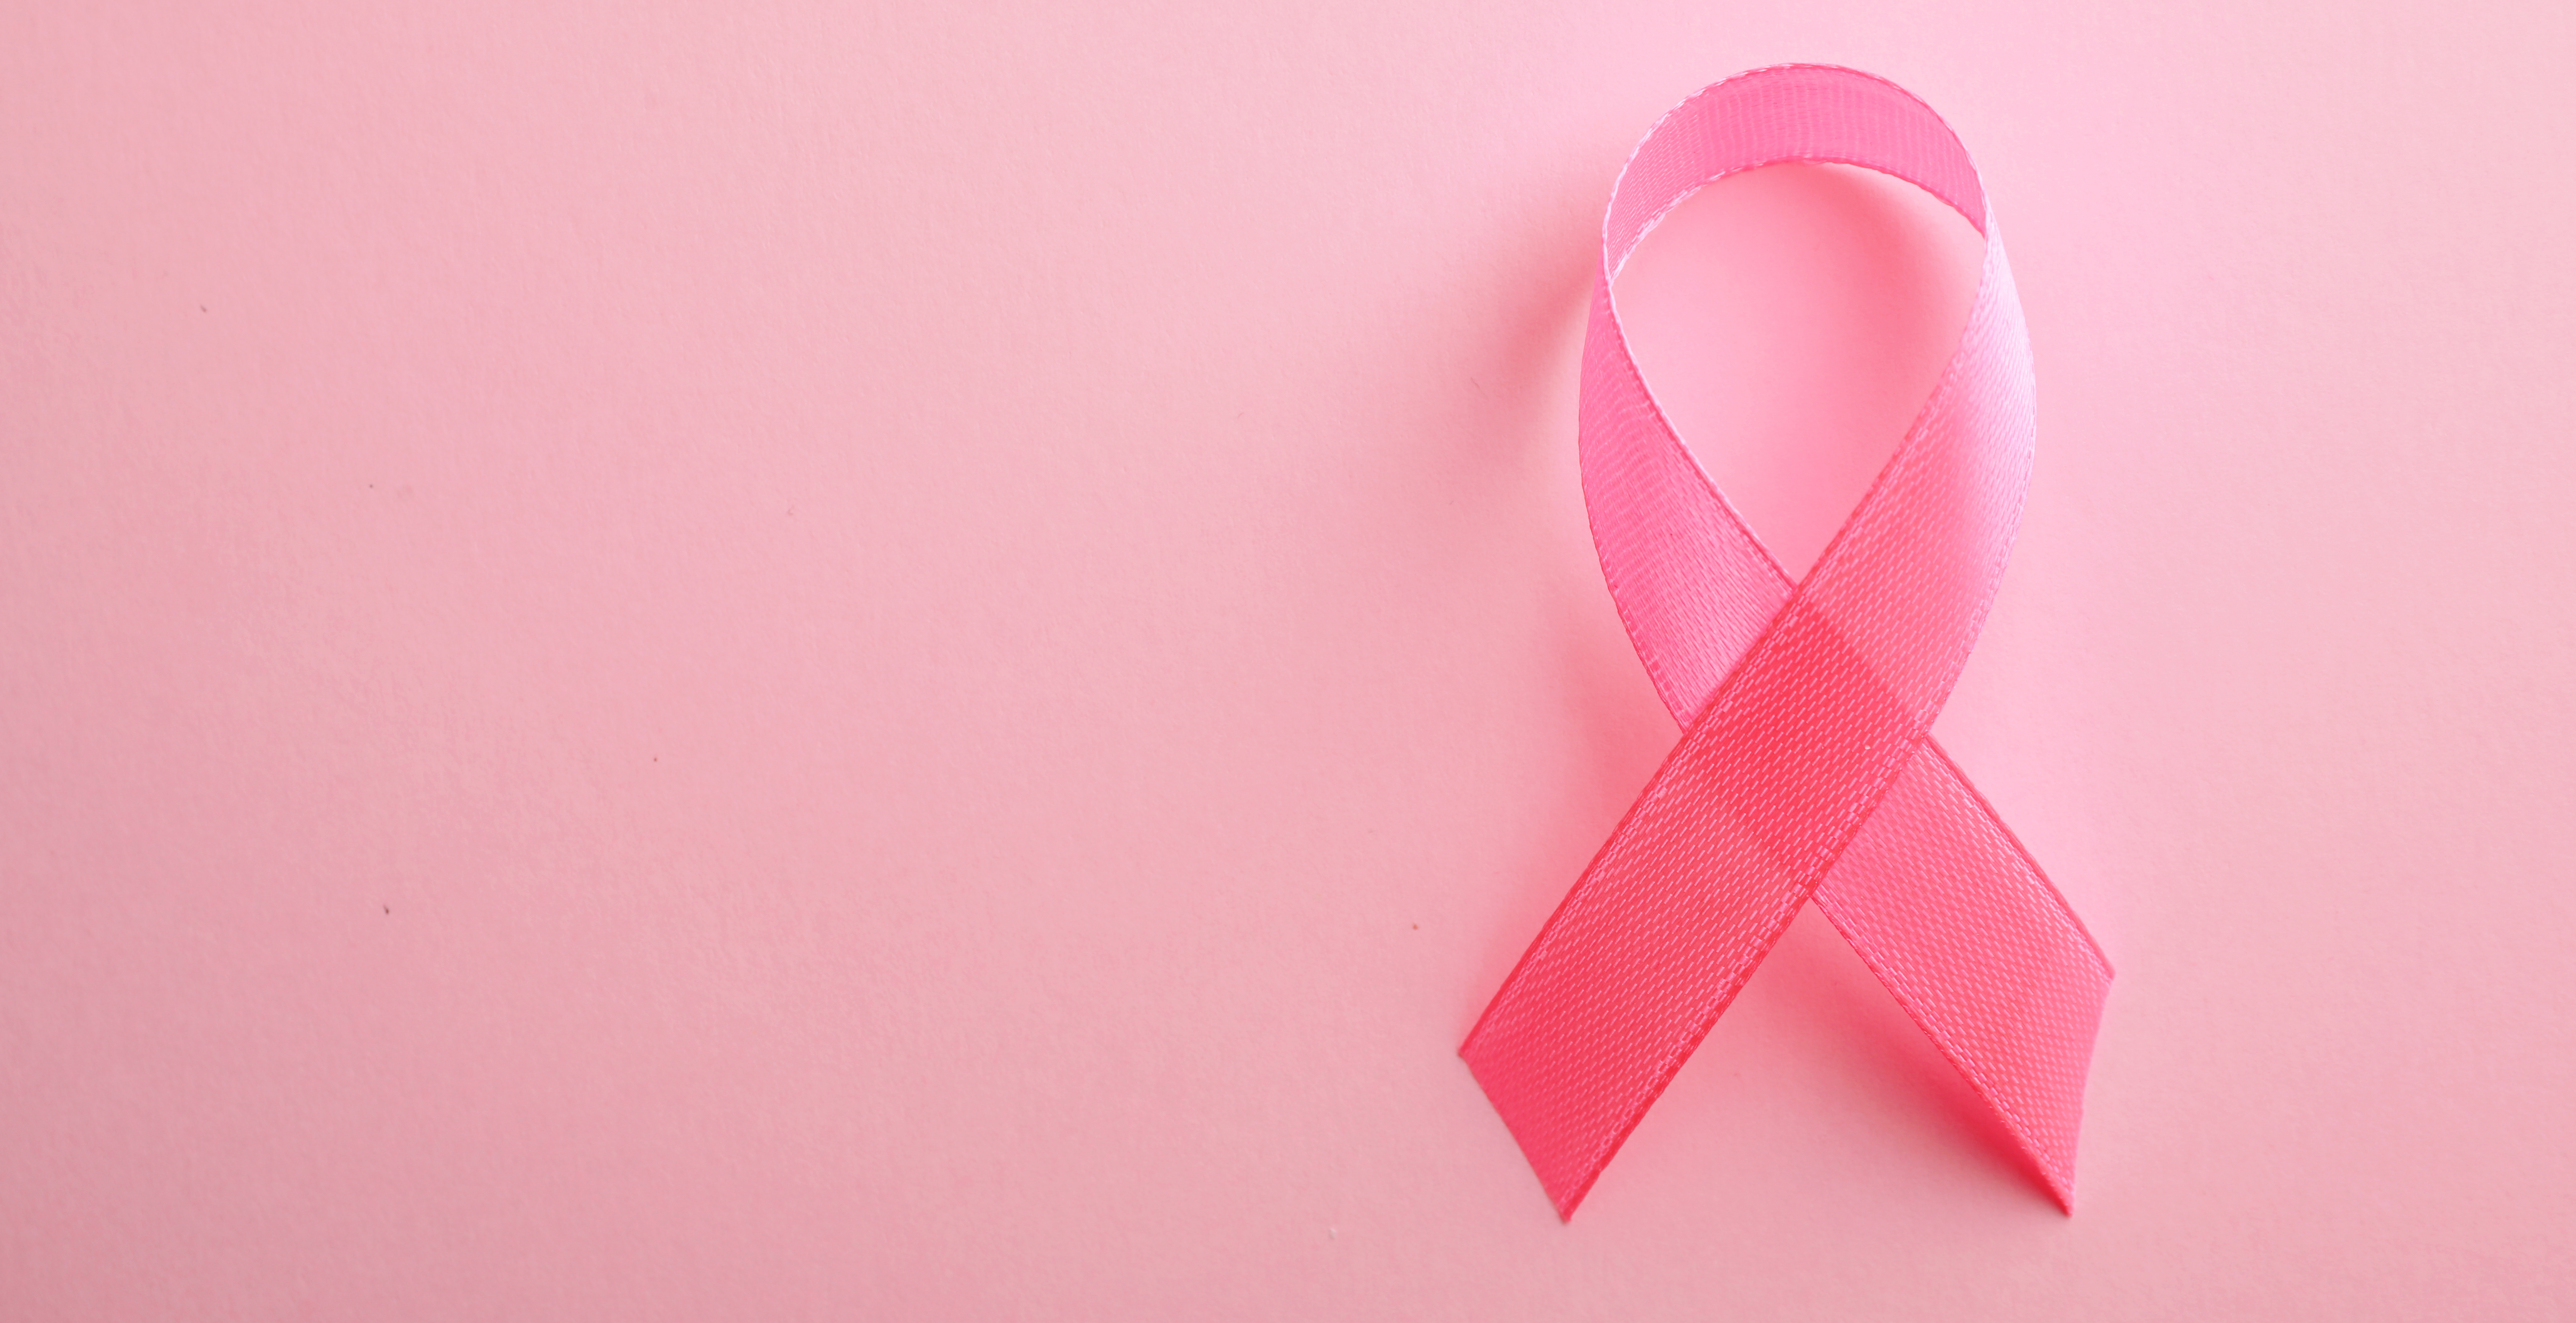 Precision Medicine in Breast Cancer